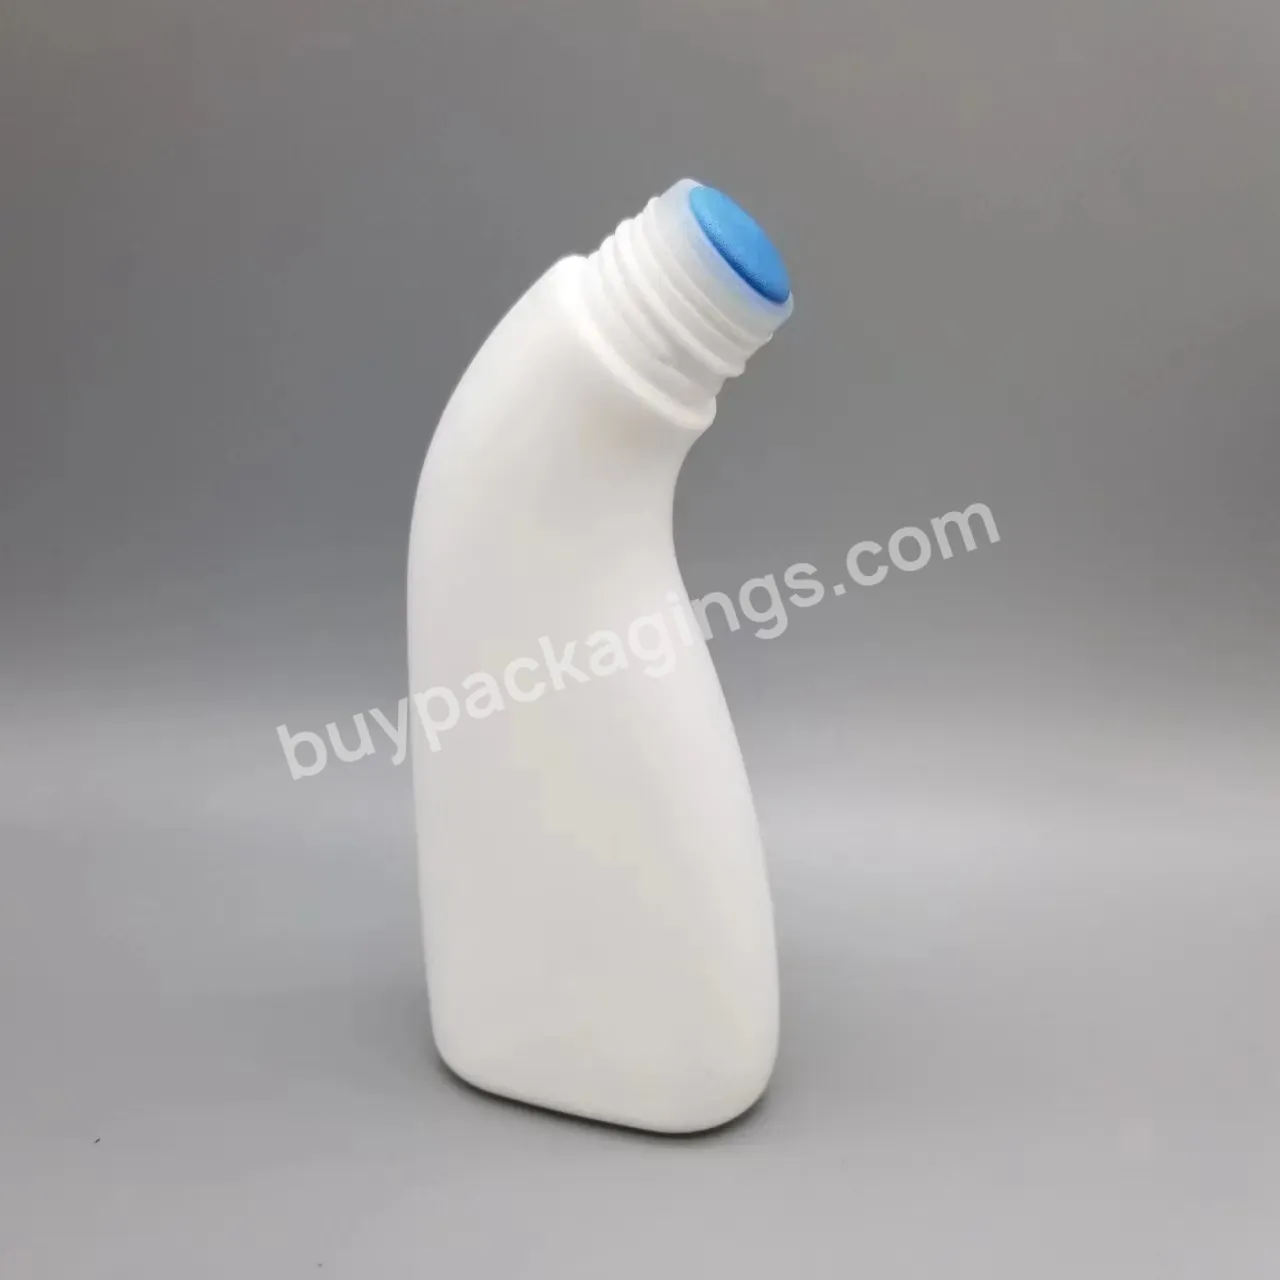 100ml Plastic Sponge Applicator Bottle For Shoulder Pain - Buy Sponge Top Bottle 100ml,100ml Curve Sponge Bottle,3oz Plastic Sponge Dauber Bottle For Medical Liquid.